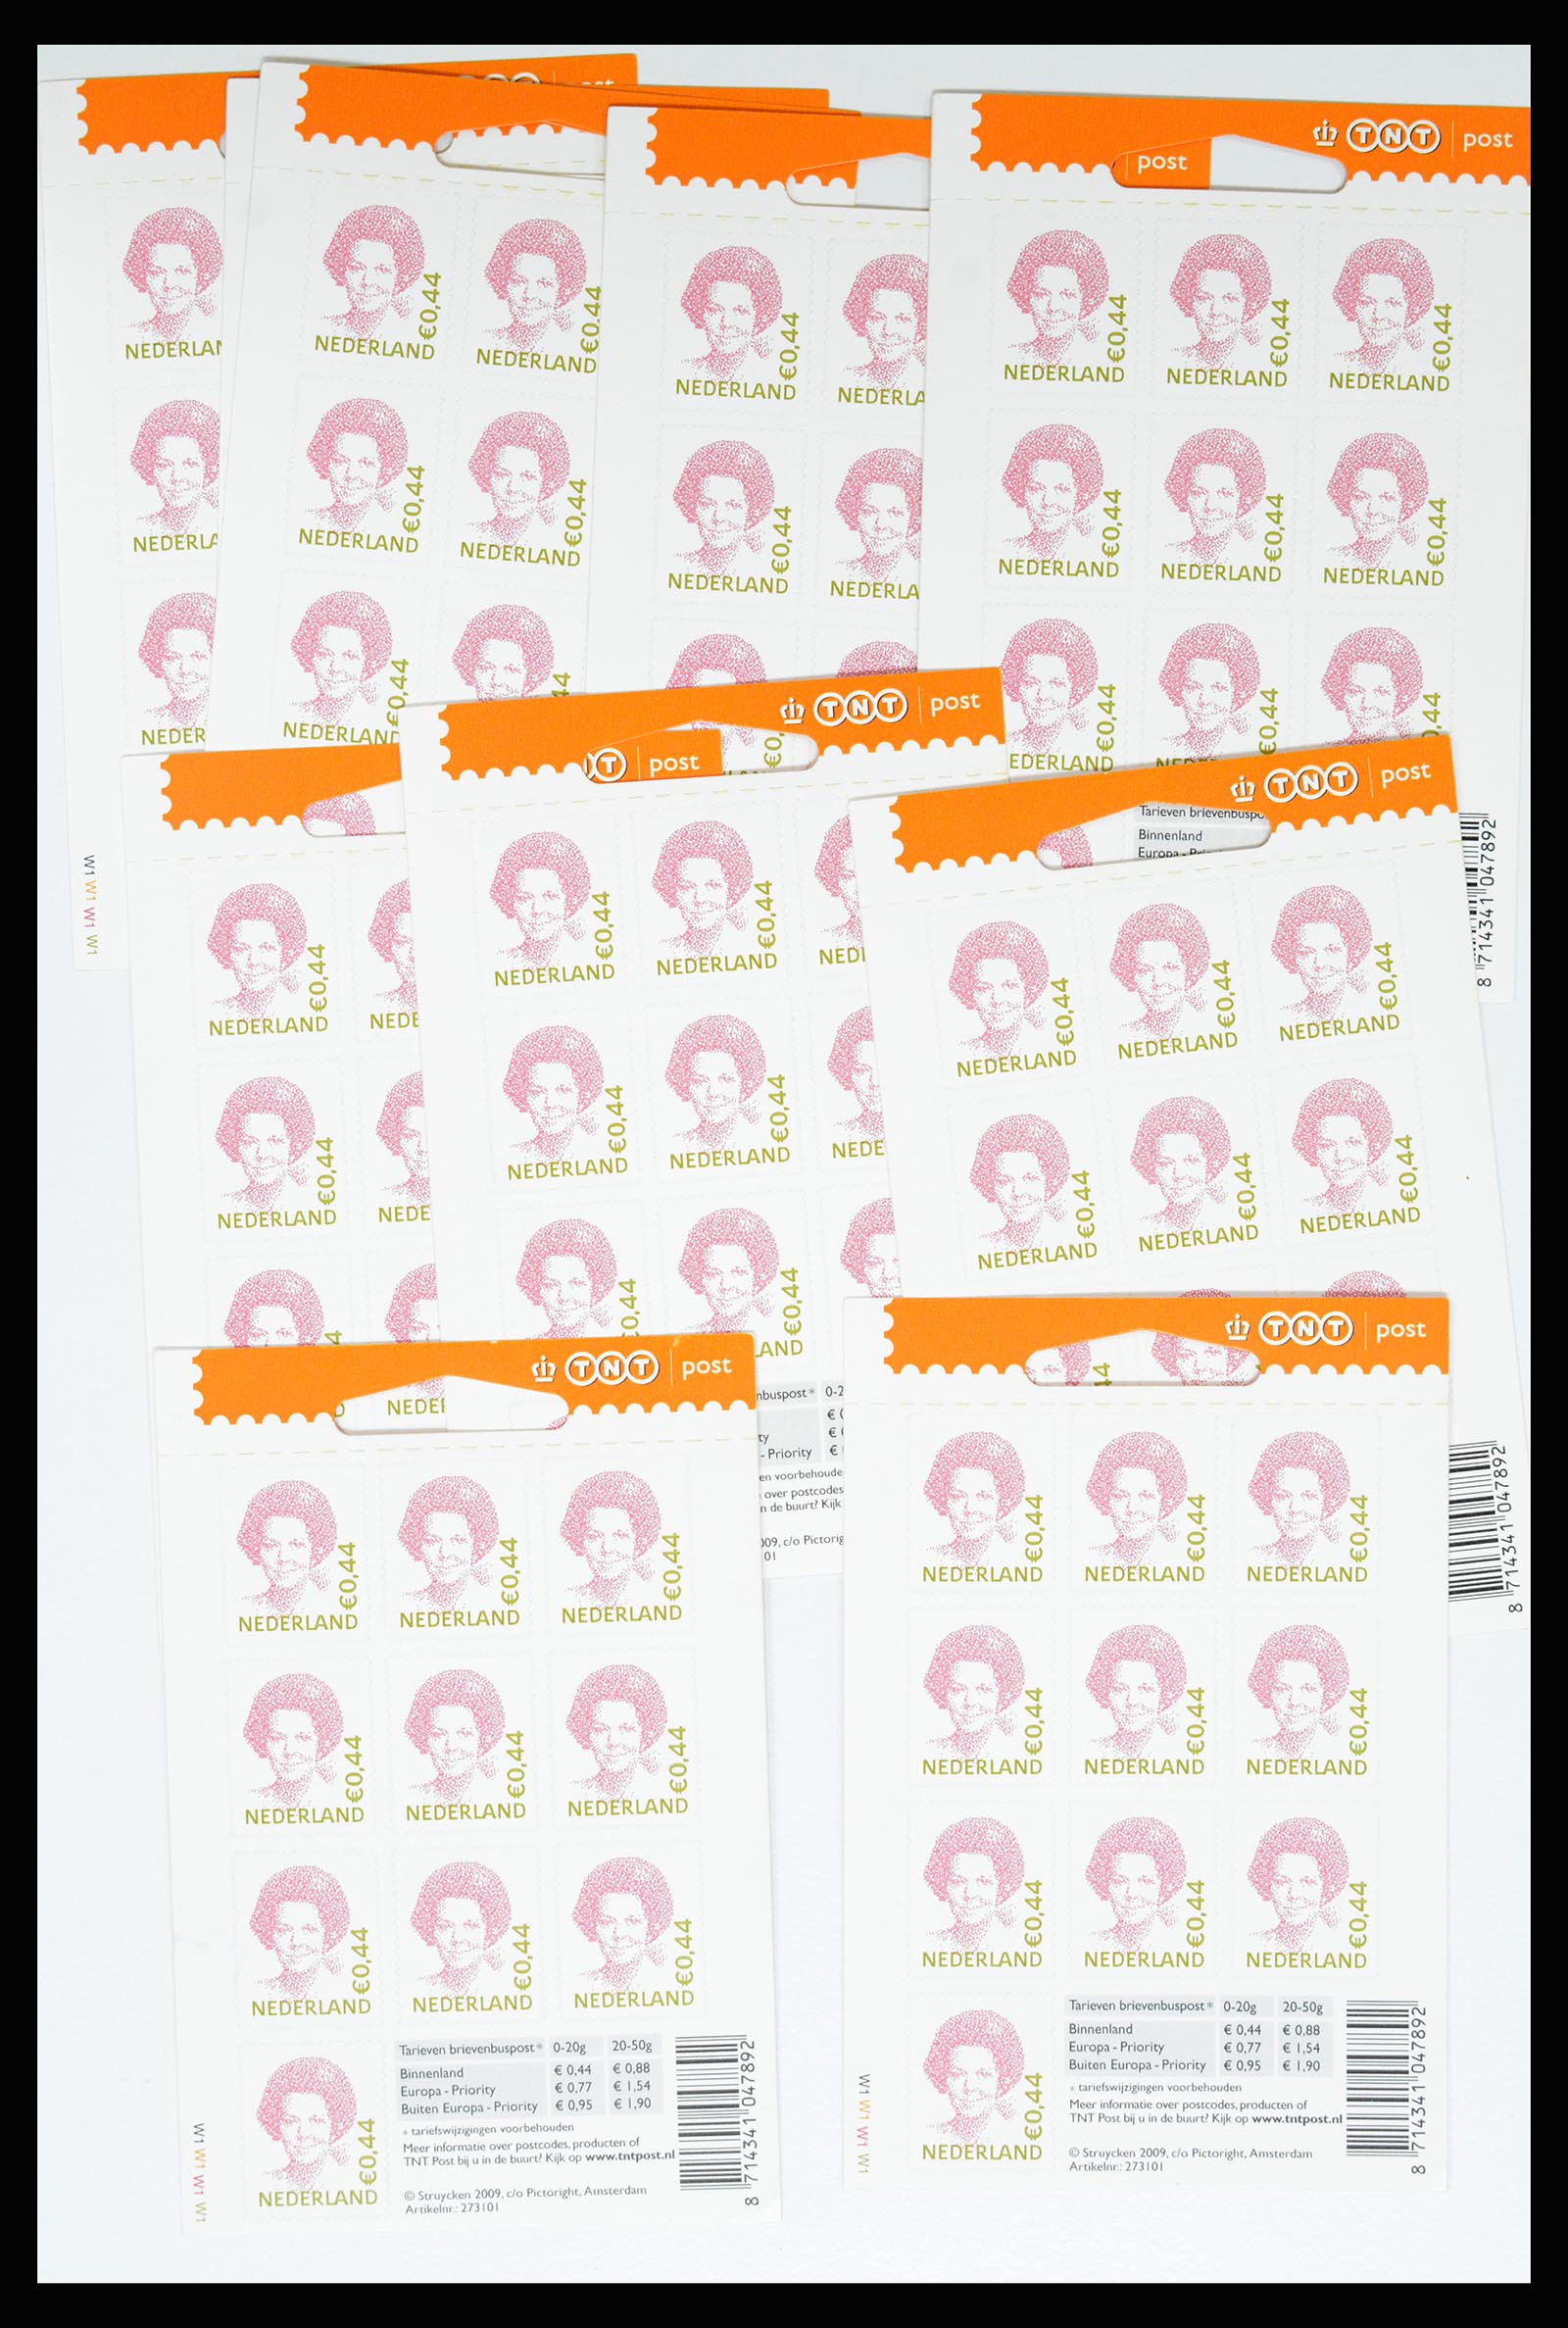 37044 010 - Stamp collection 37044 Netherlands better sheetlets 2002-2009.